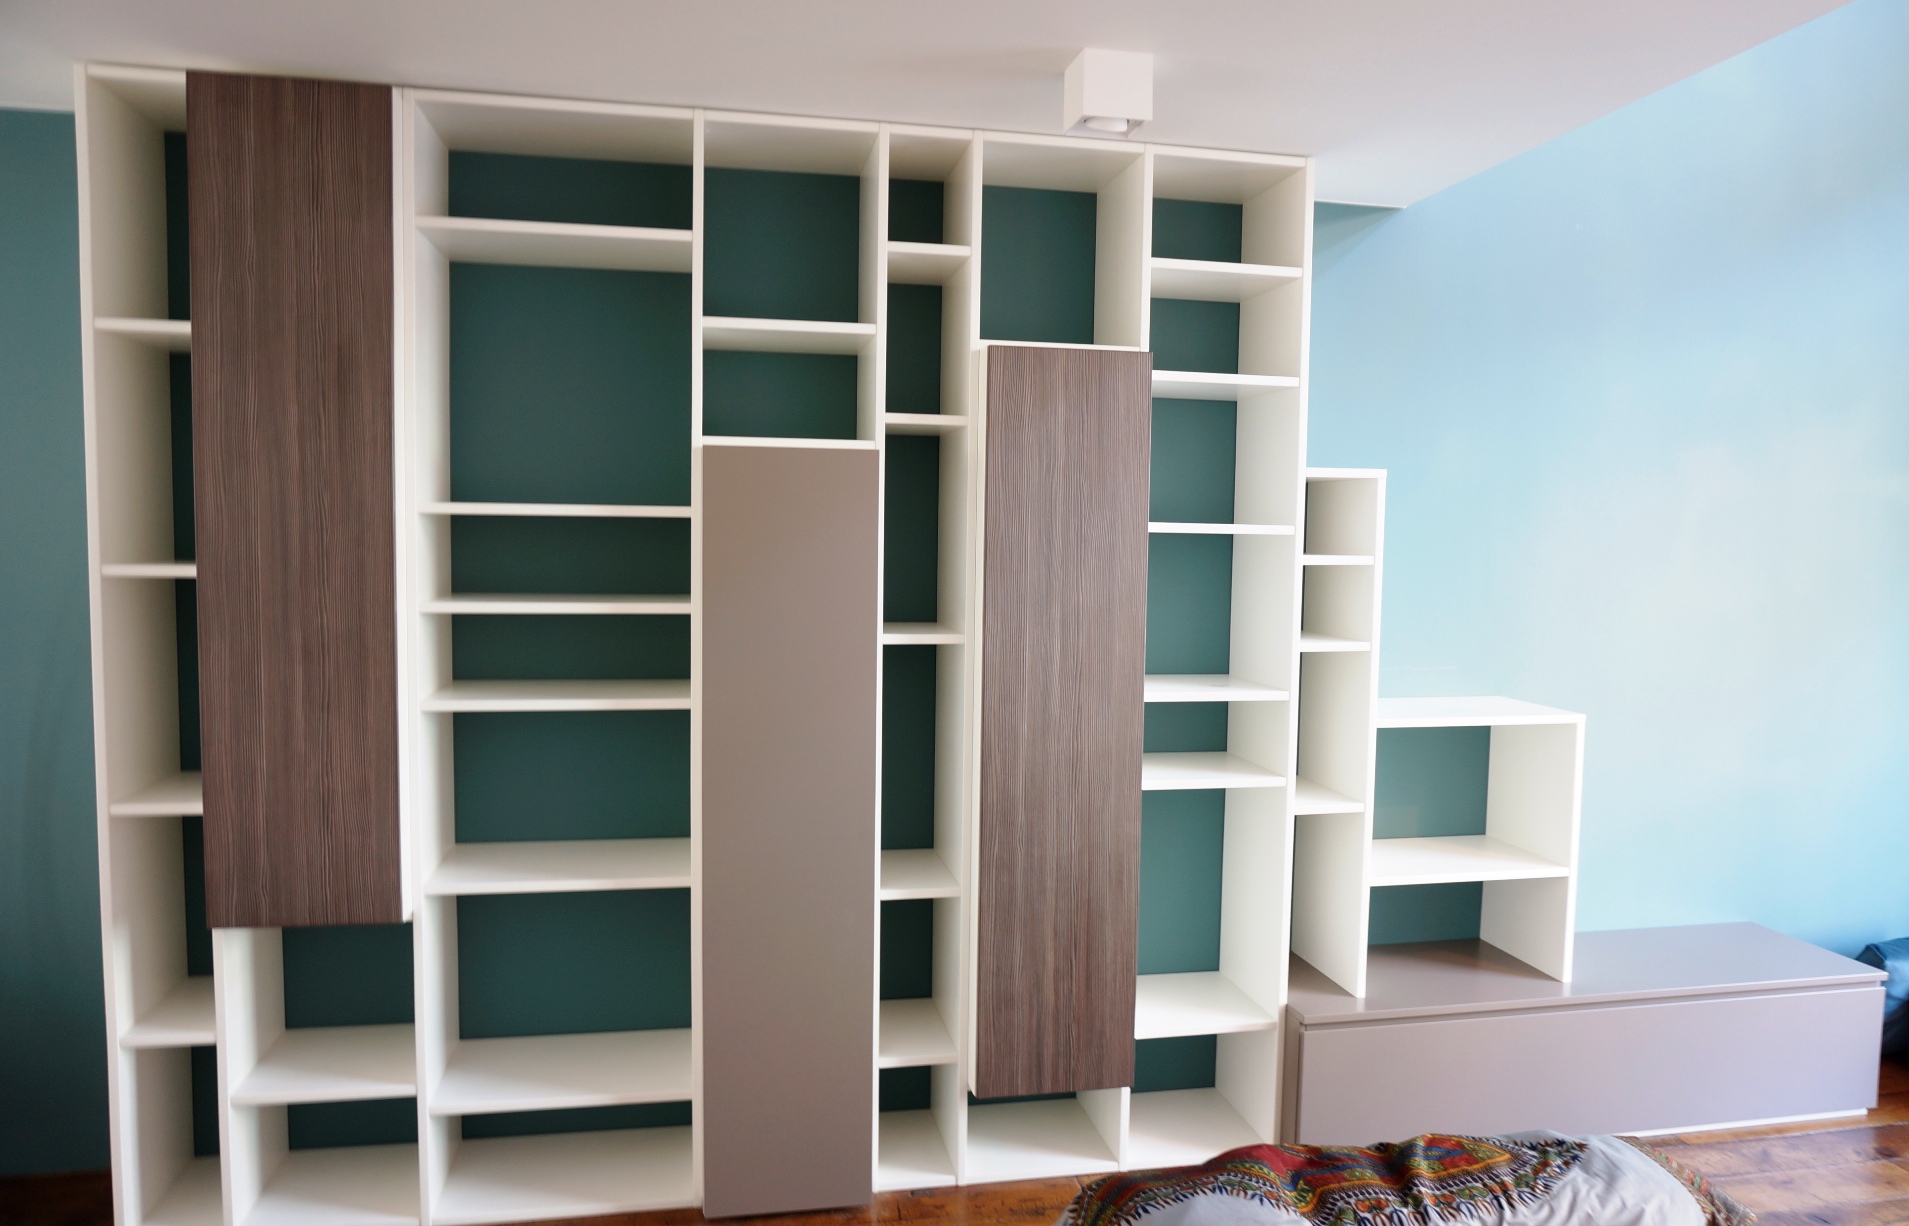 deur Omtrek omhelzing Wandmeubel/Boekenkast met een speelse indeling, en naar voren geplaatste  kasten in diverse kleuren - HvS-Design | Maatwerk meubelen speciaal voor u!